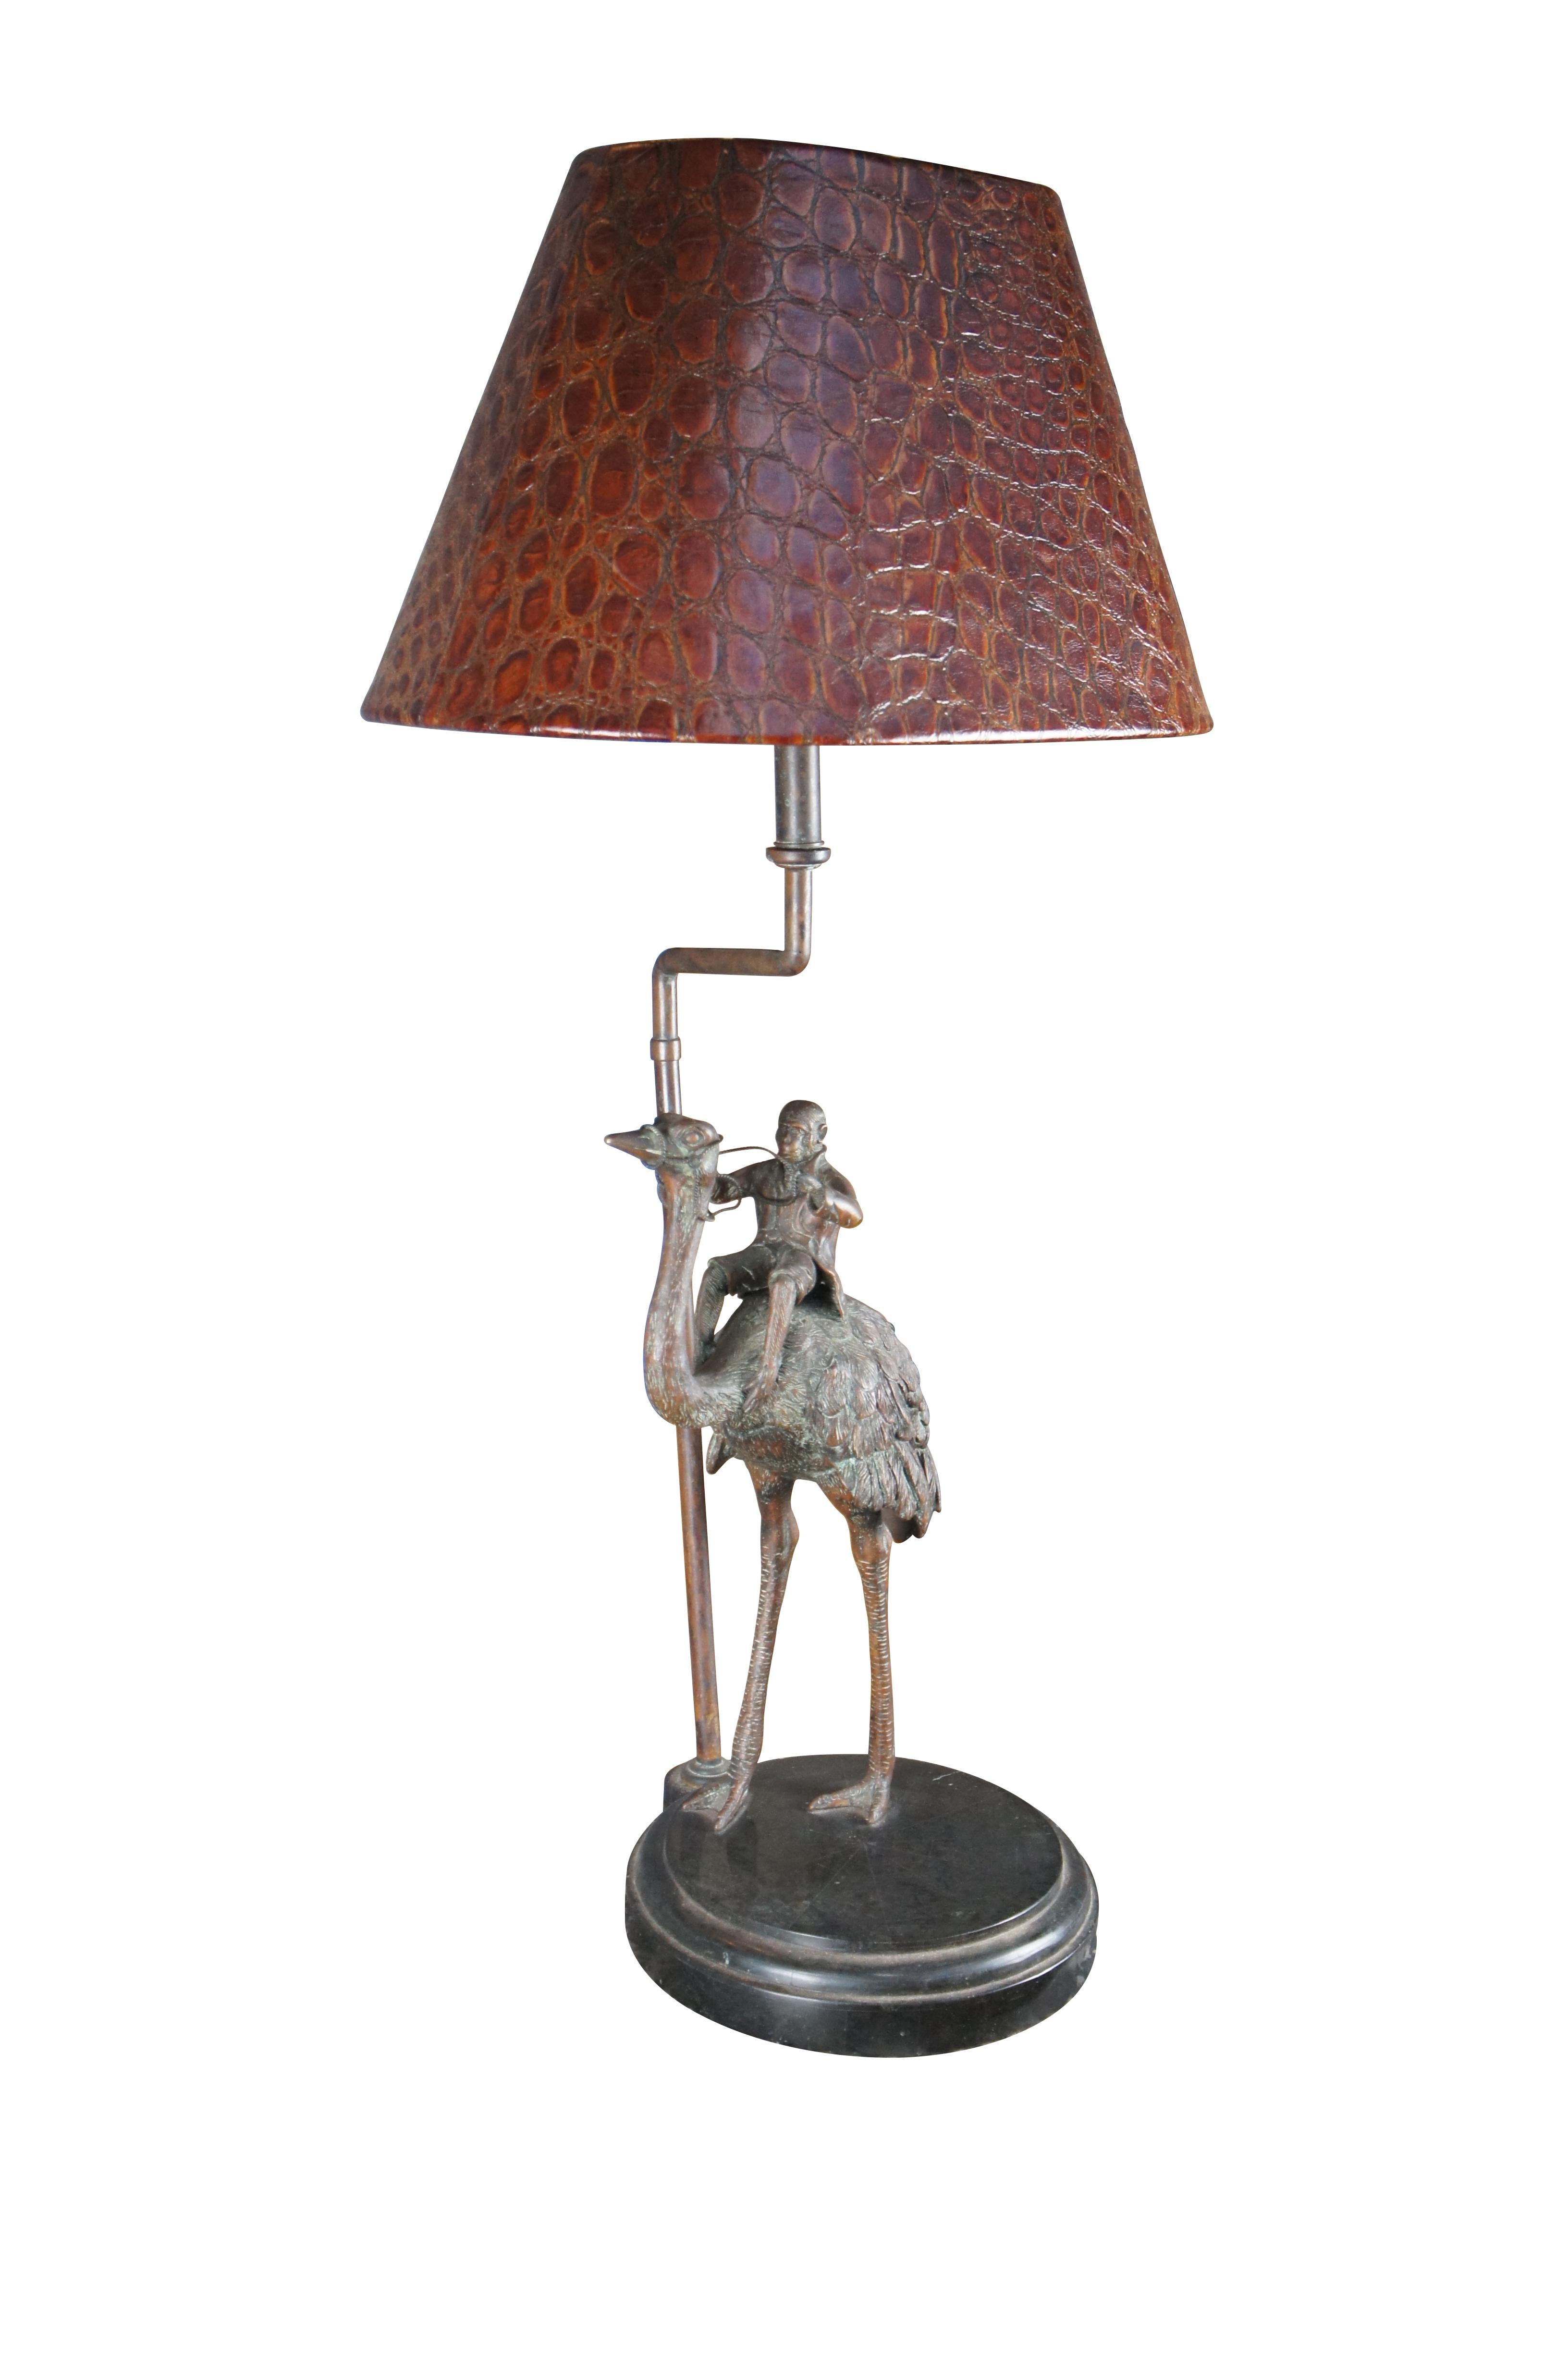 Charmante lampe de table de la fin du 20e siècle par Maitland Smith. L'autruche en bronze porte un singe. Le bronze est posé sur une base ronde en marbre tessellé et comprend un abat-jour en cuir gaufré à motif d'autruche.

Dimensions :
39